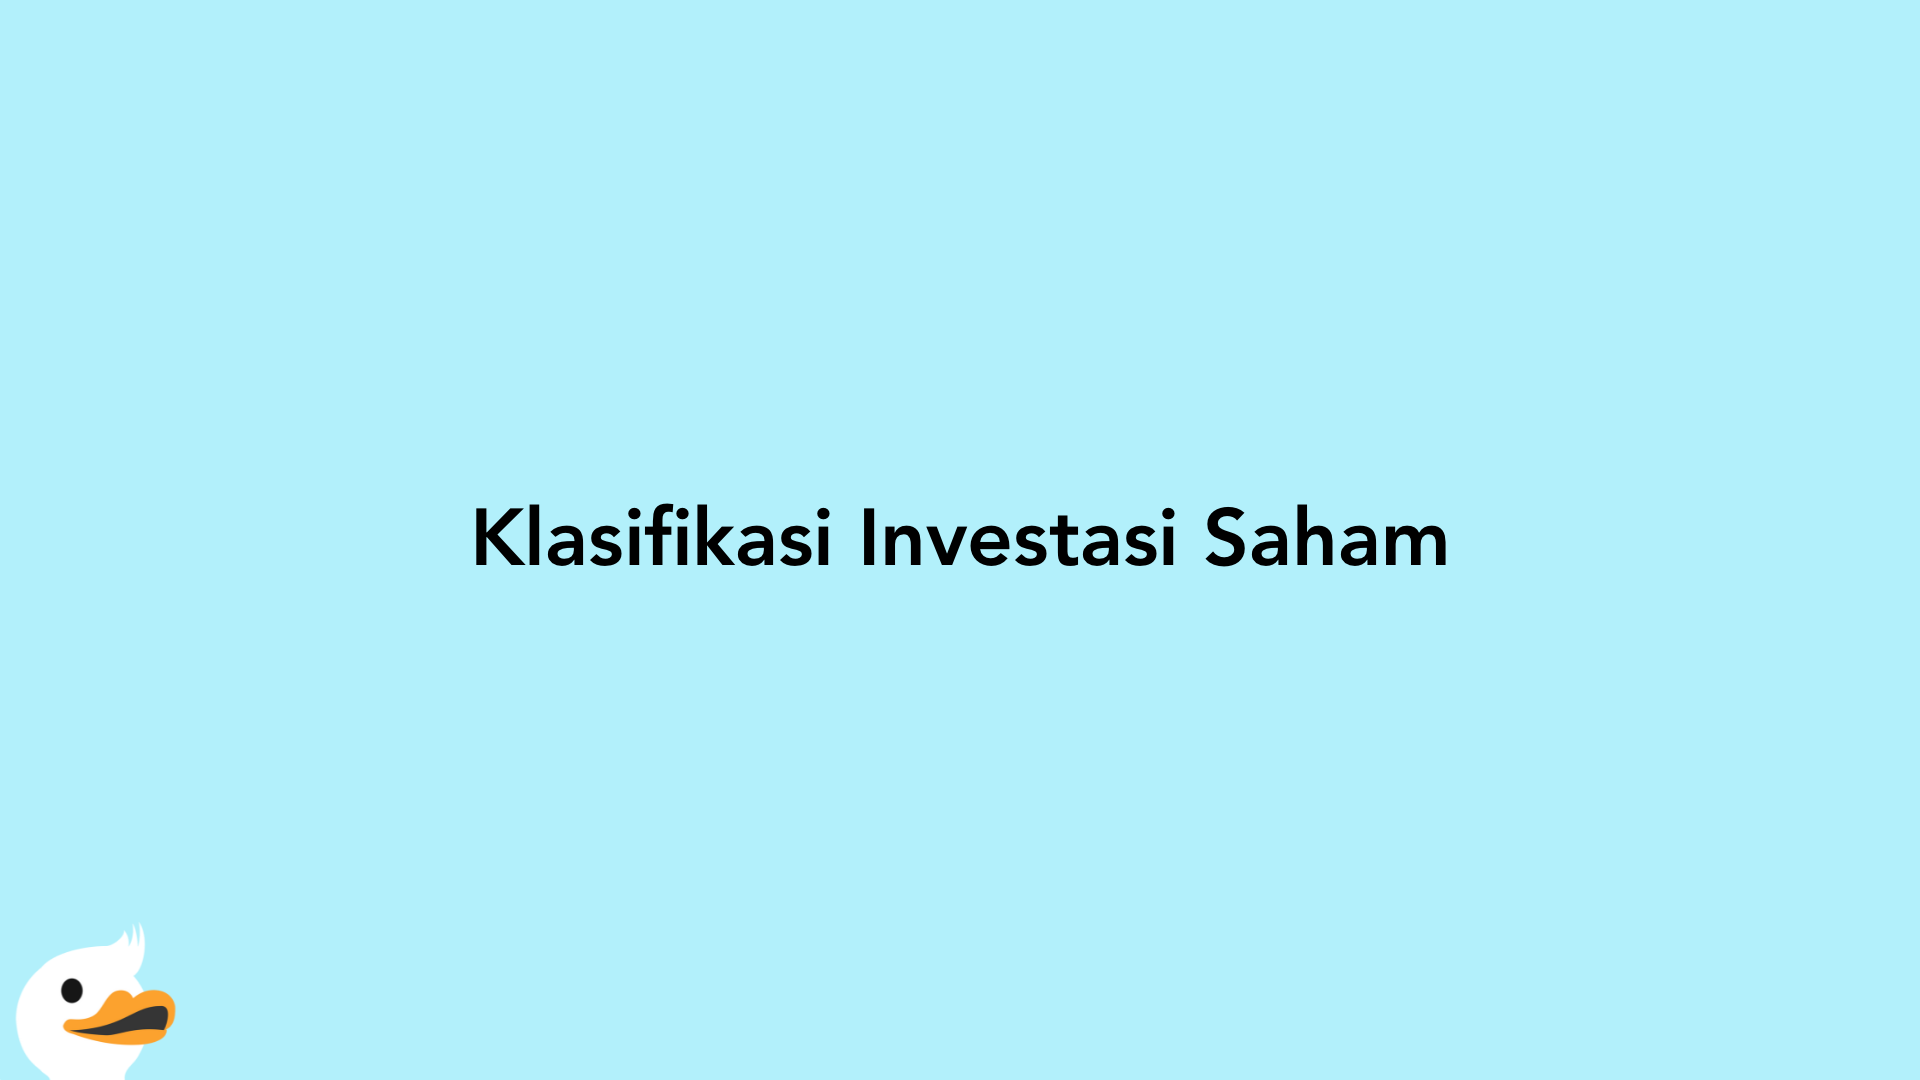 Klasifikasi Investasi Saham